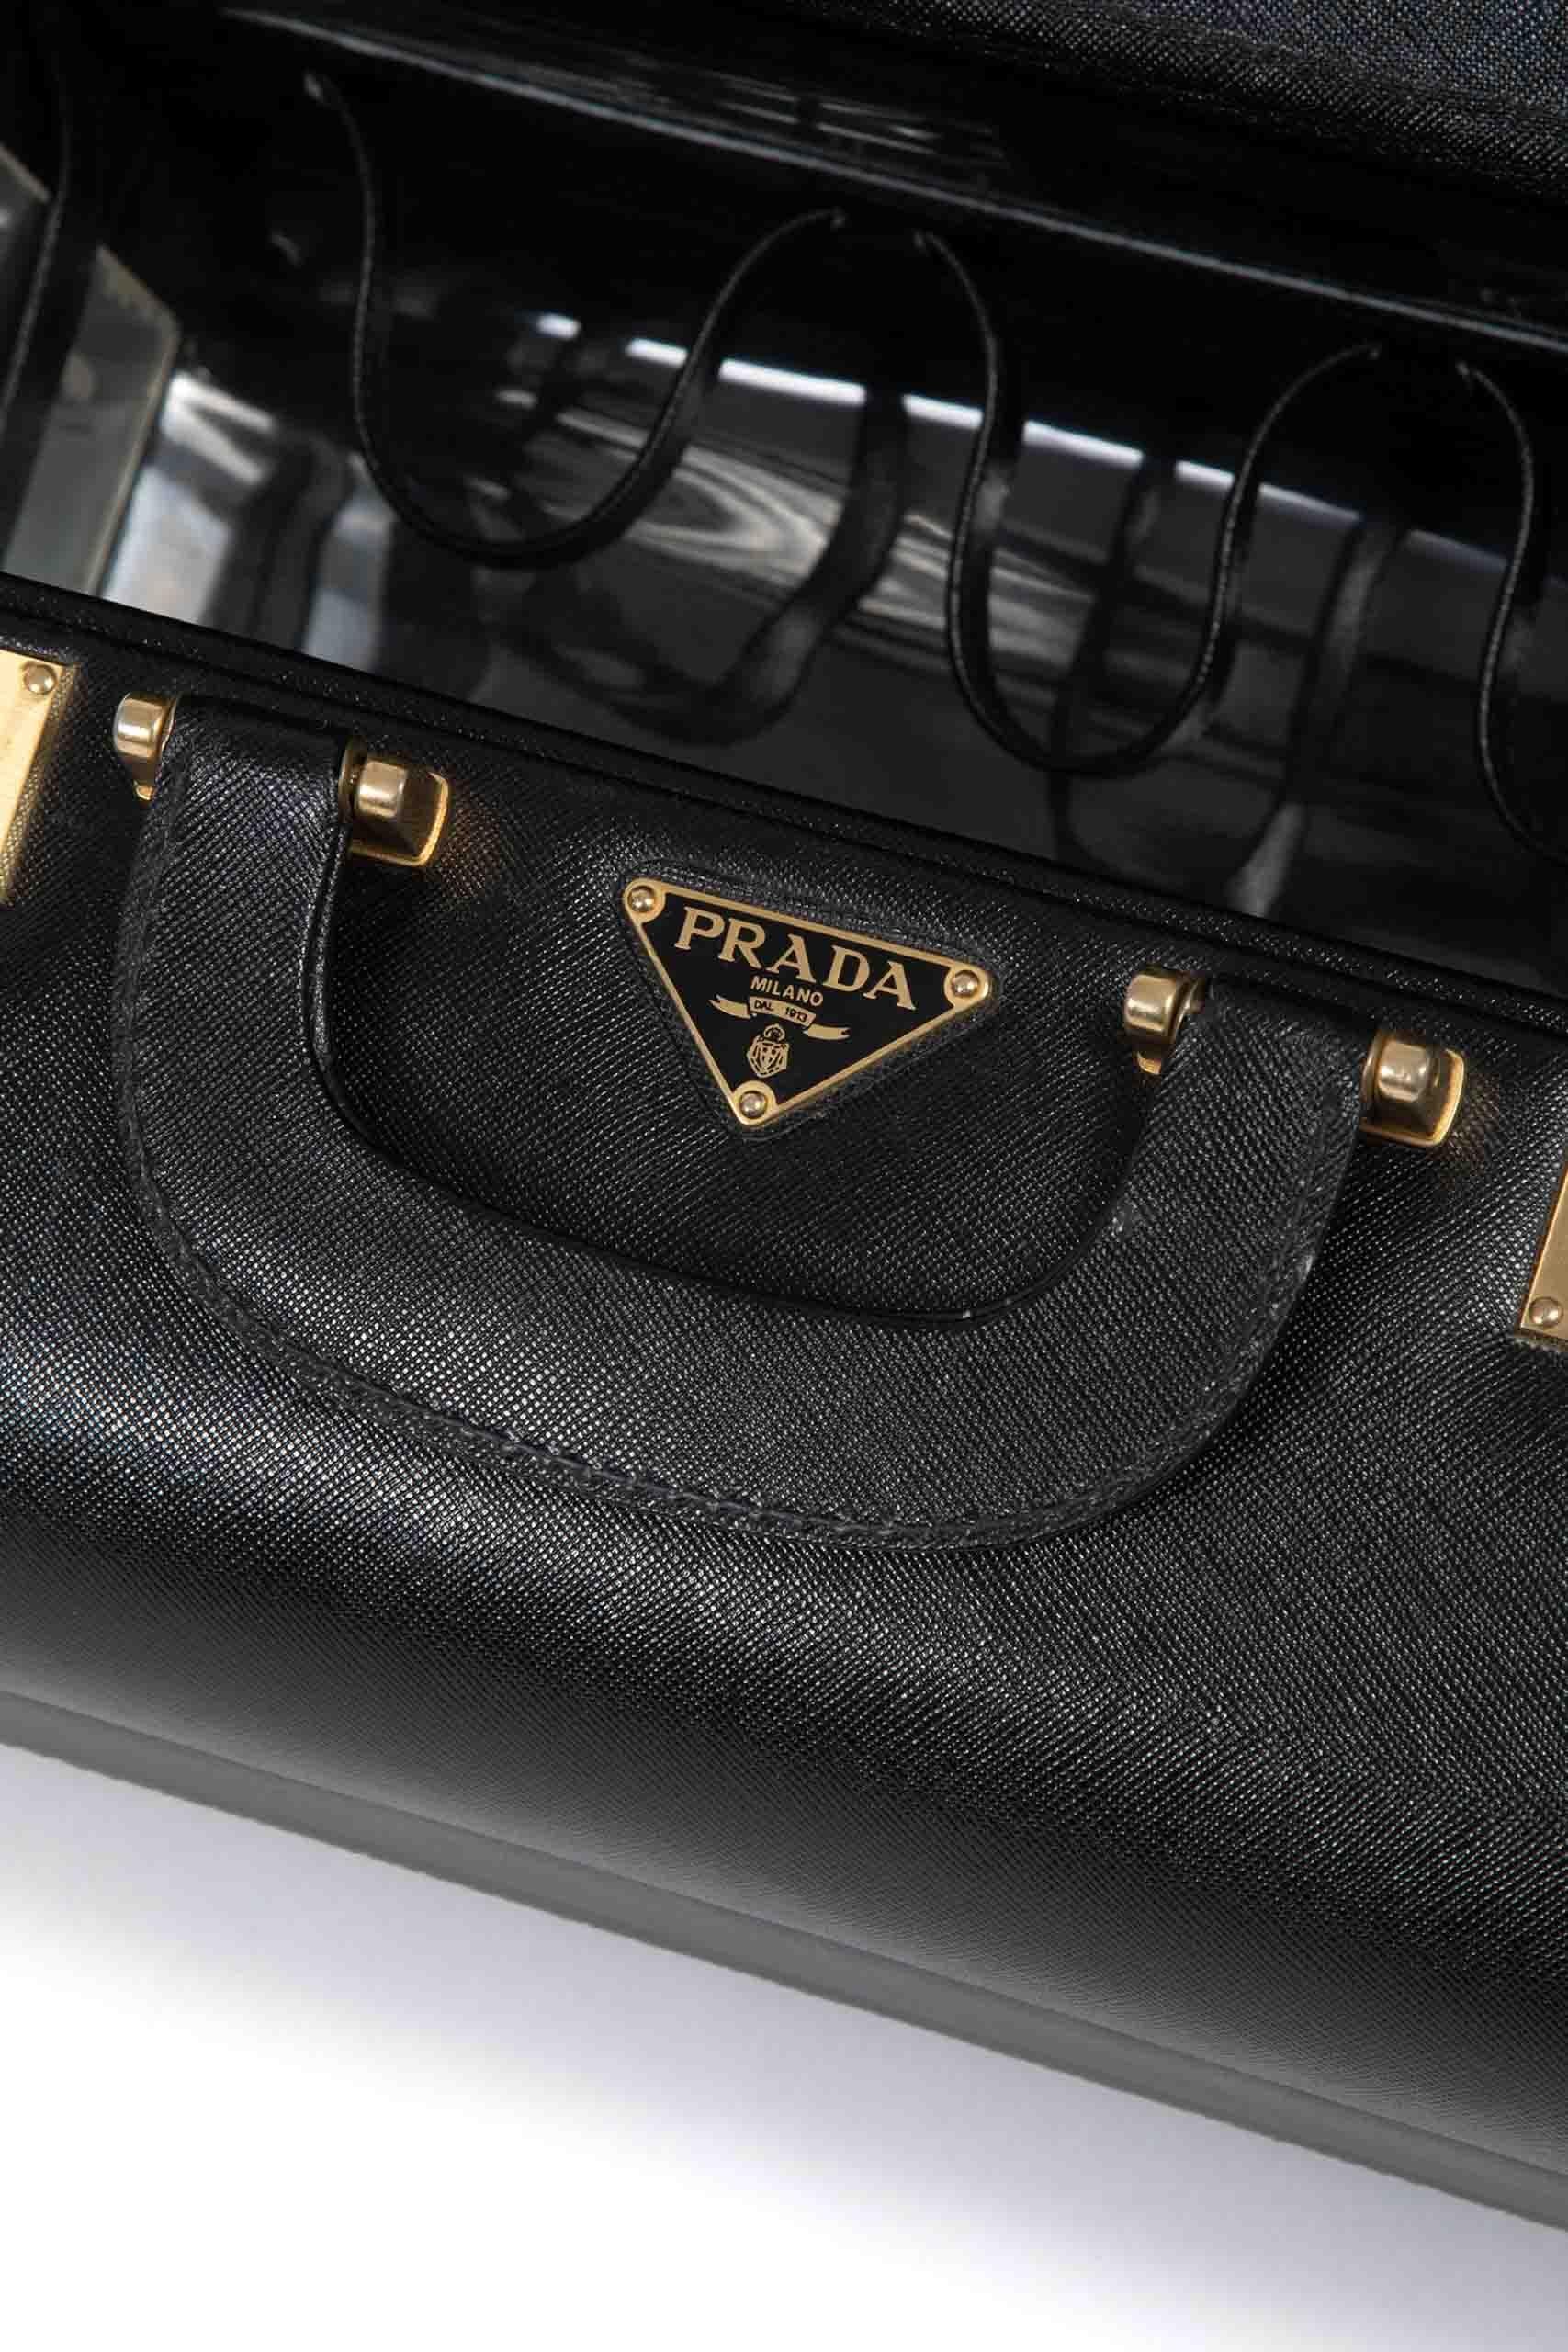 Bel étui Prada fabriqué à la fin des années 1980. Il est réalisé en cuir noir Saffiano, marque de fabrique des bagages et de la maroquinerie Prada. Le beautycase est doté d'une double poignée en cuir, d'une serrure à combinaison numérique, de